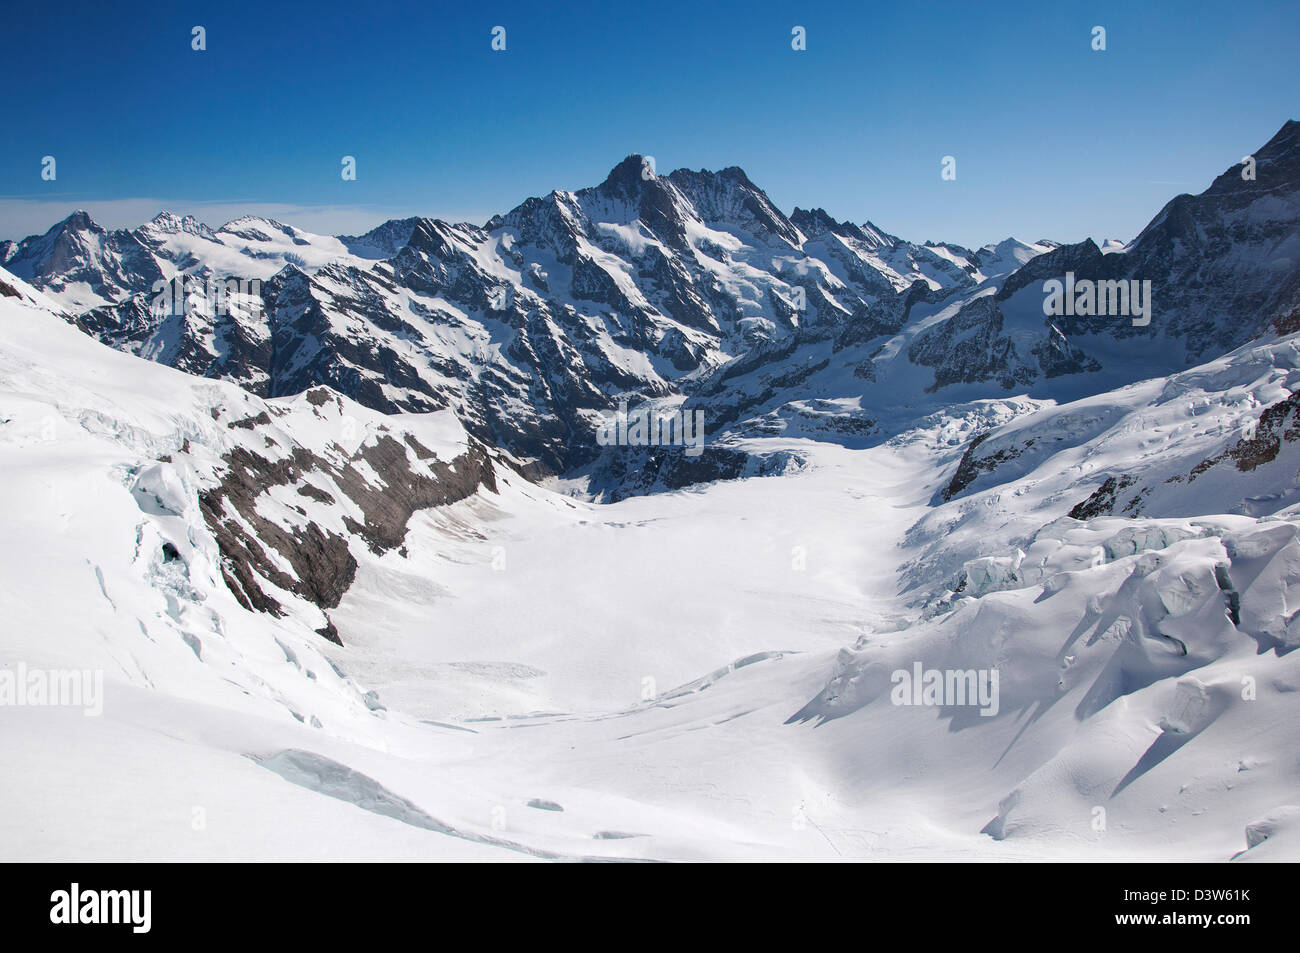 Ein Blick auf die schneebedeckten Schweizer Alpen Bergkette von Eigerwand Tunnel Station Aussichtspunkt gesehen Stockfoto